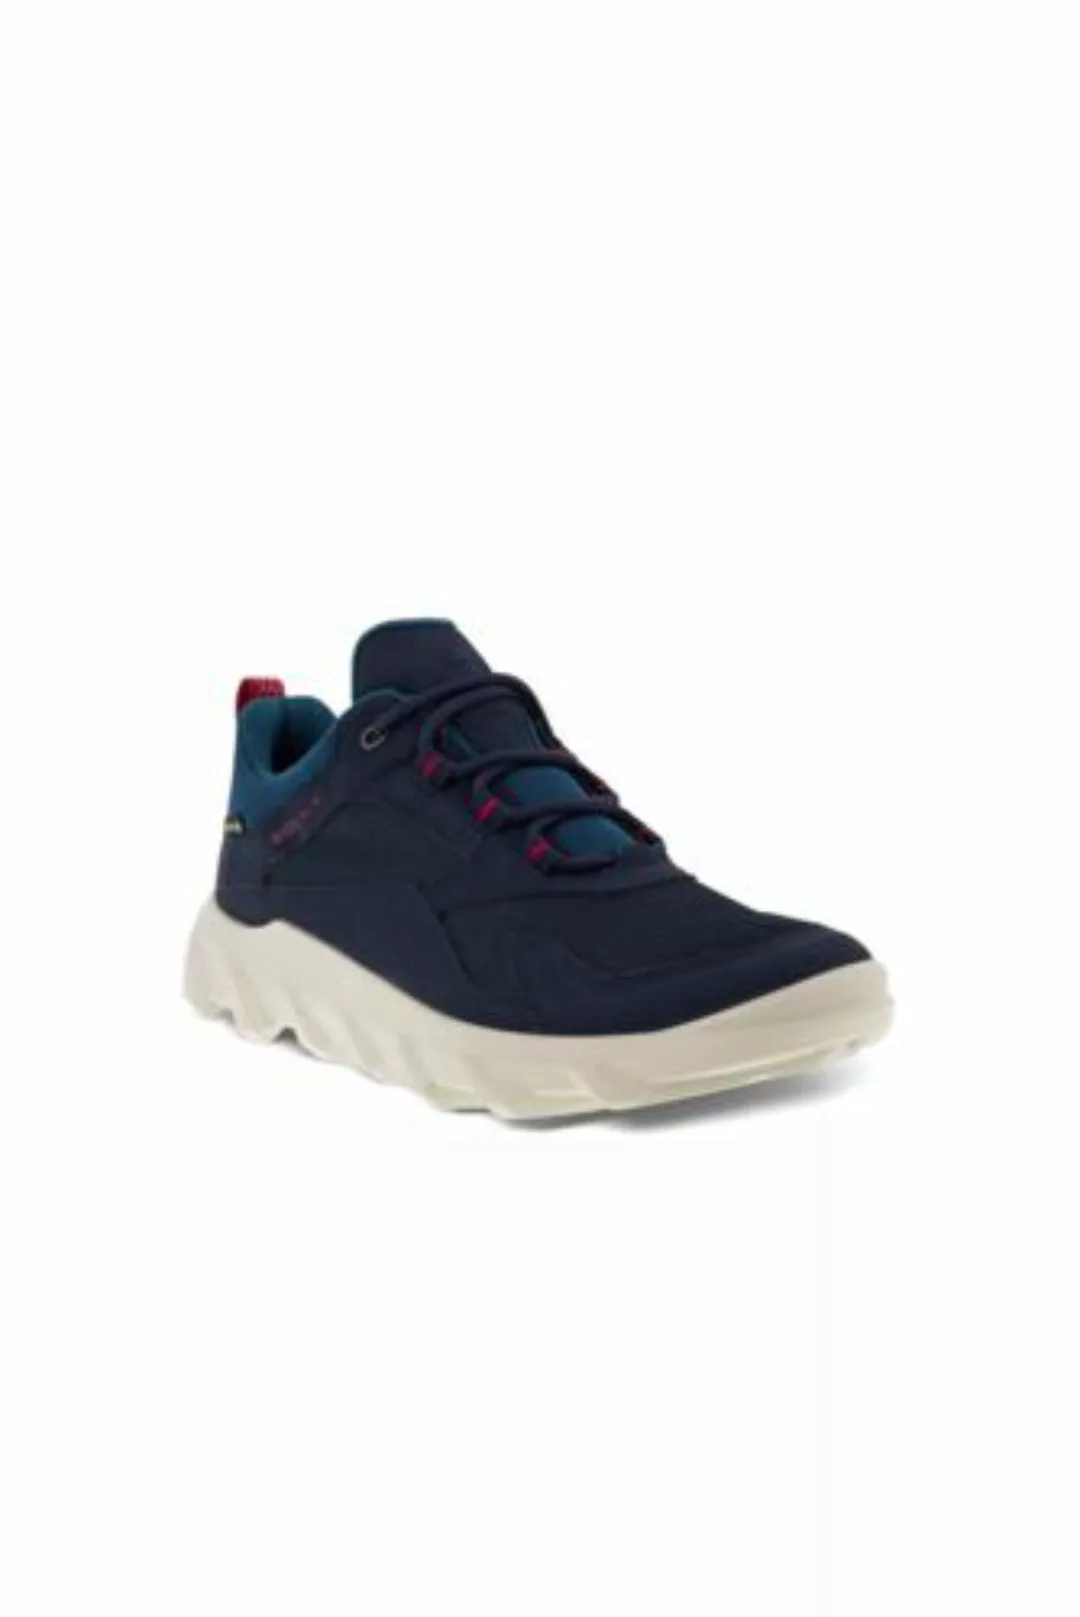 ECCO MX Sneaker, Damen, Größe: 36 Normal, Blau, by Lands' End, Nacht Himmel günstig online kaufen